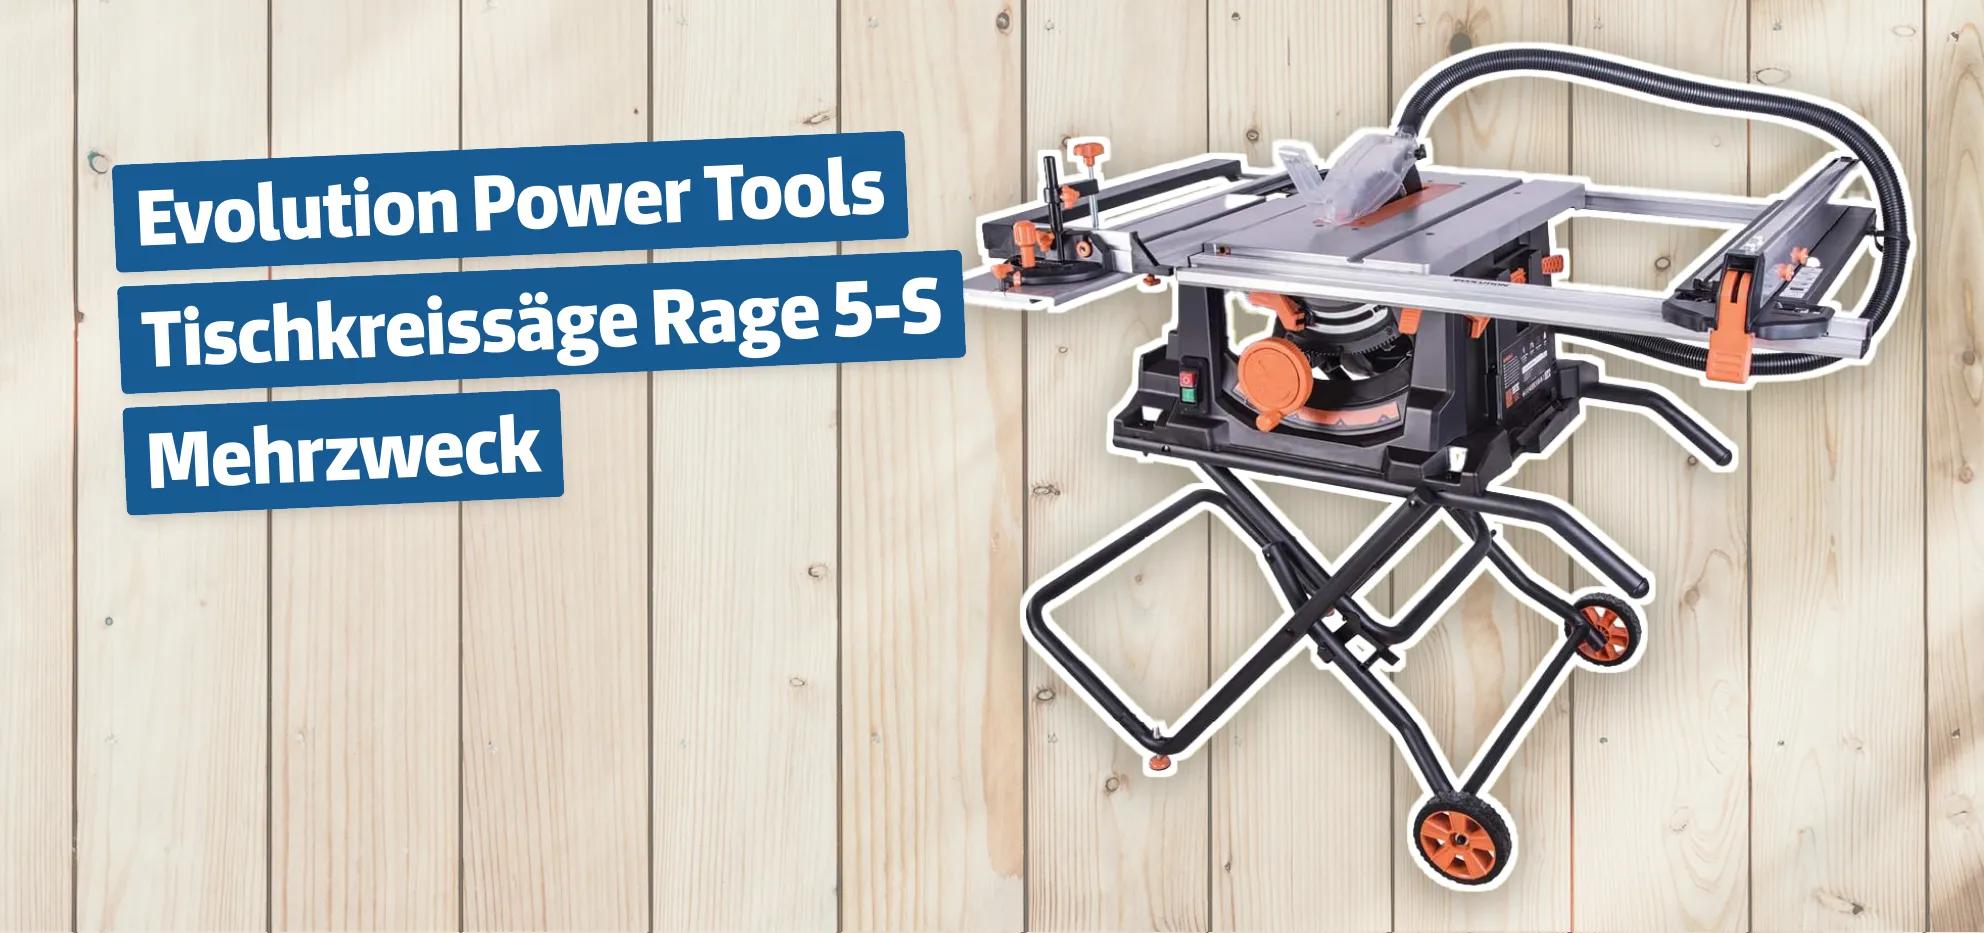 Evolution Power Tools Tischkreissäge Rage 5-S Mehrzweck